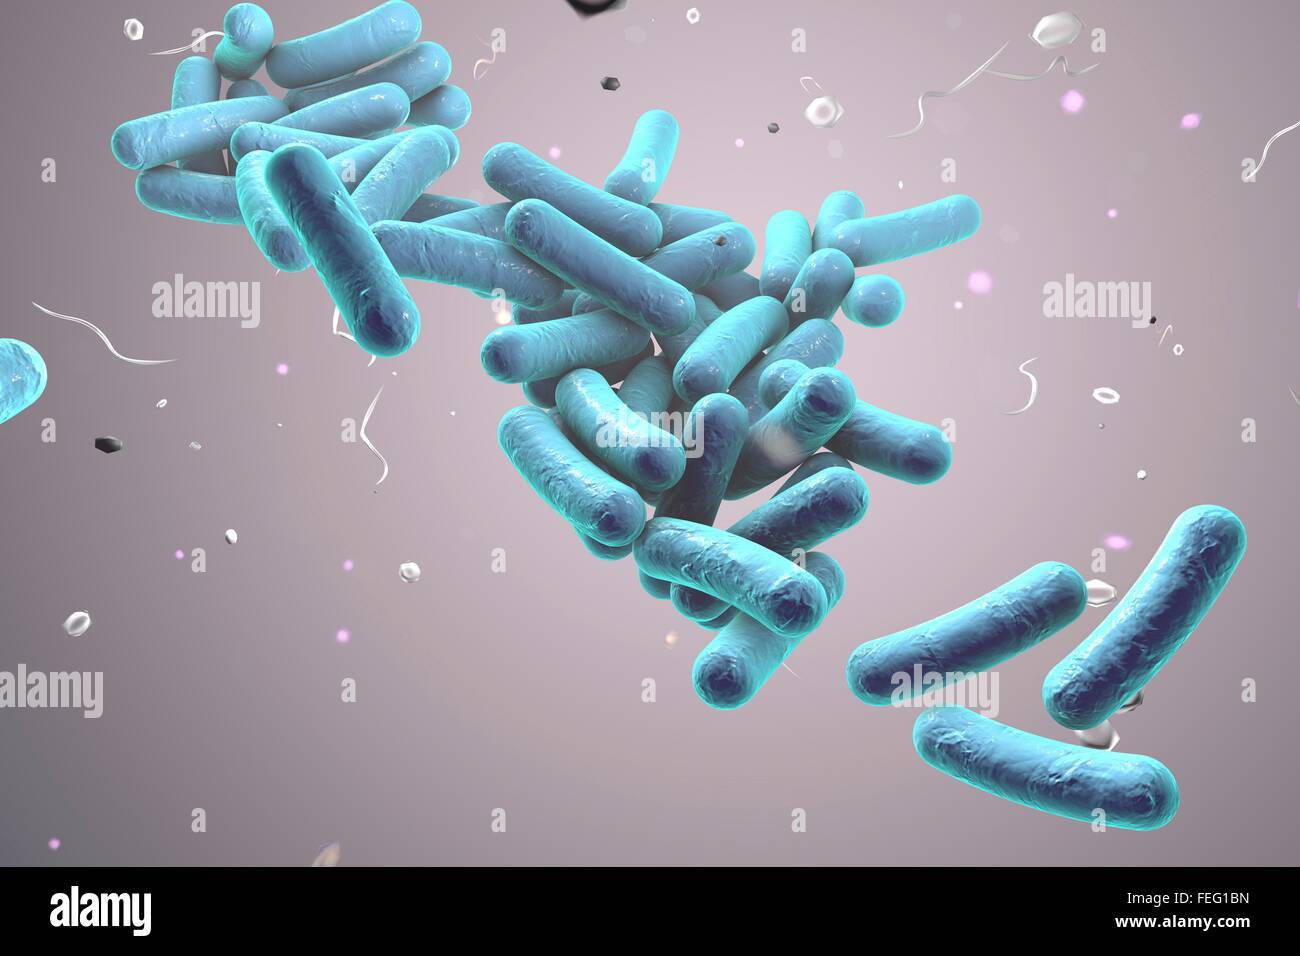 Illustration of rod-shaped bacteria. Rod-shaped bacteria include Escherichia coli, Salmonella, Shigella, Legionella, Stock Photo